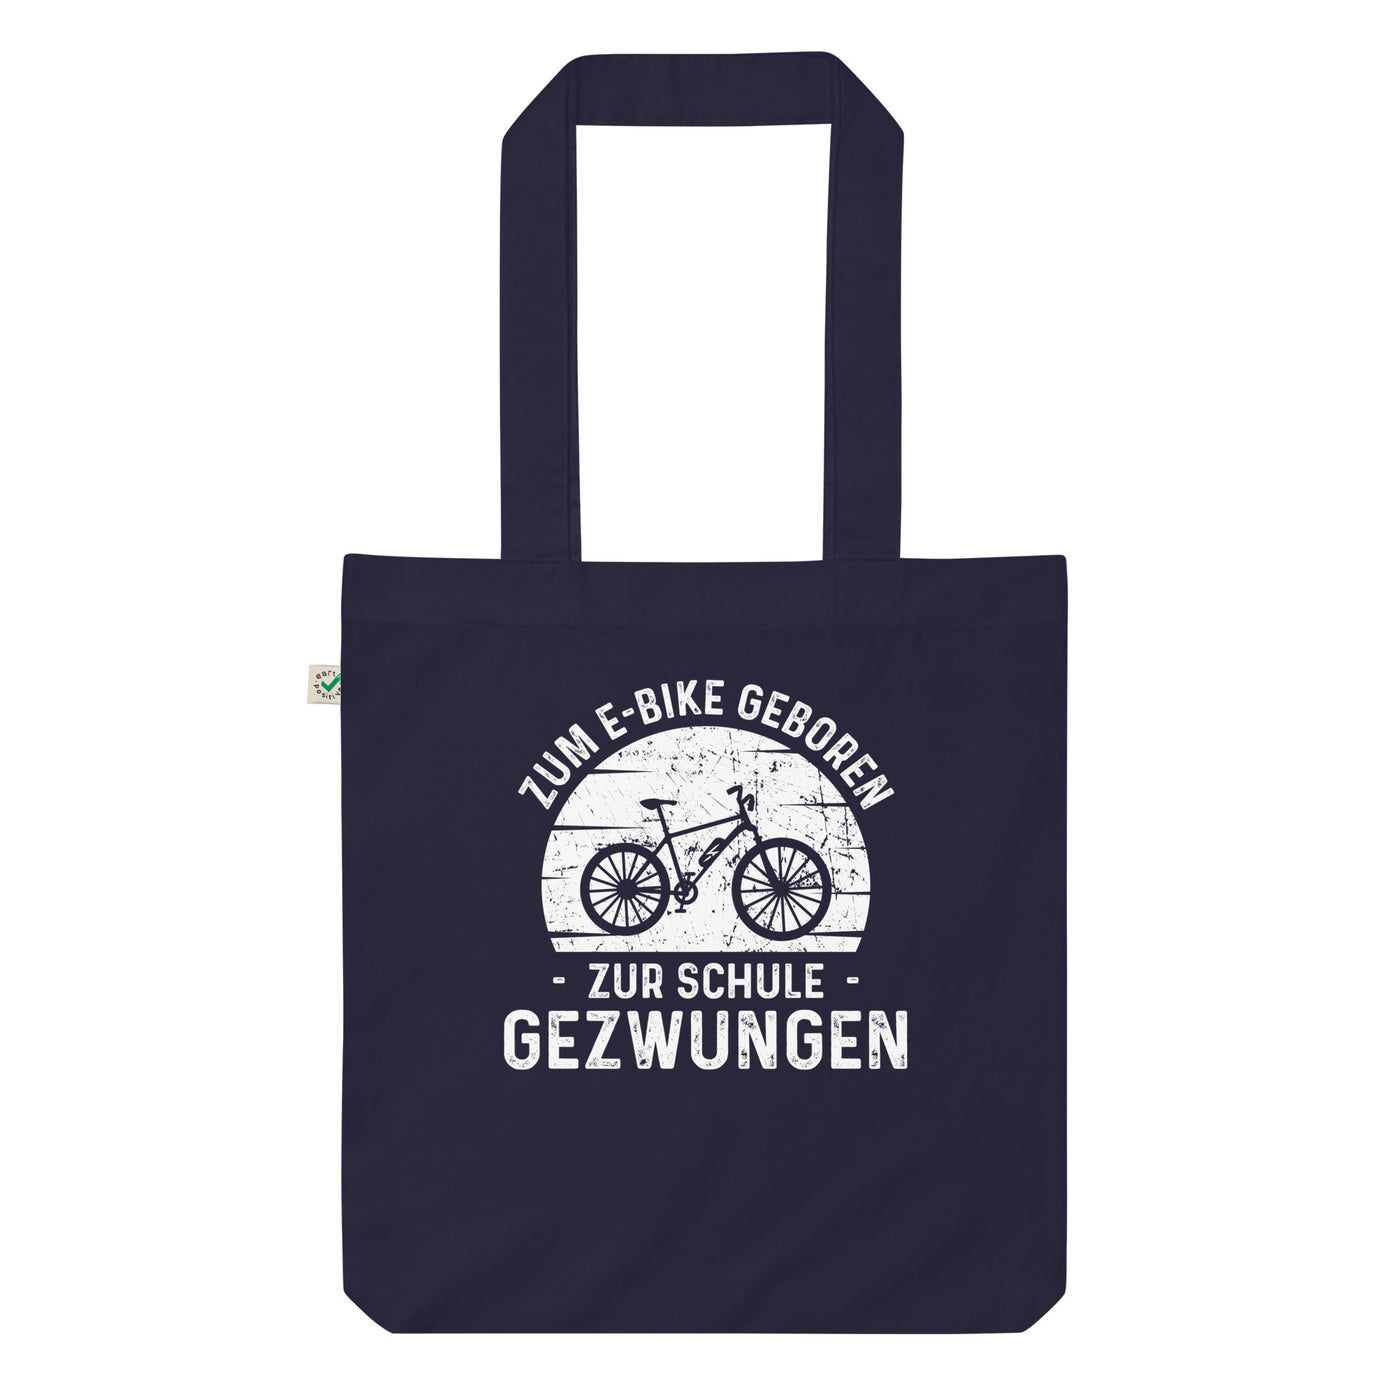 Zum E-Bike Geboren Zur Schule Gezwungen - Organic Einkaufstasche e-bike